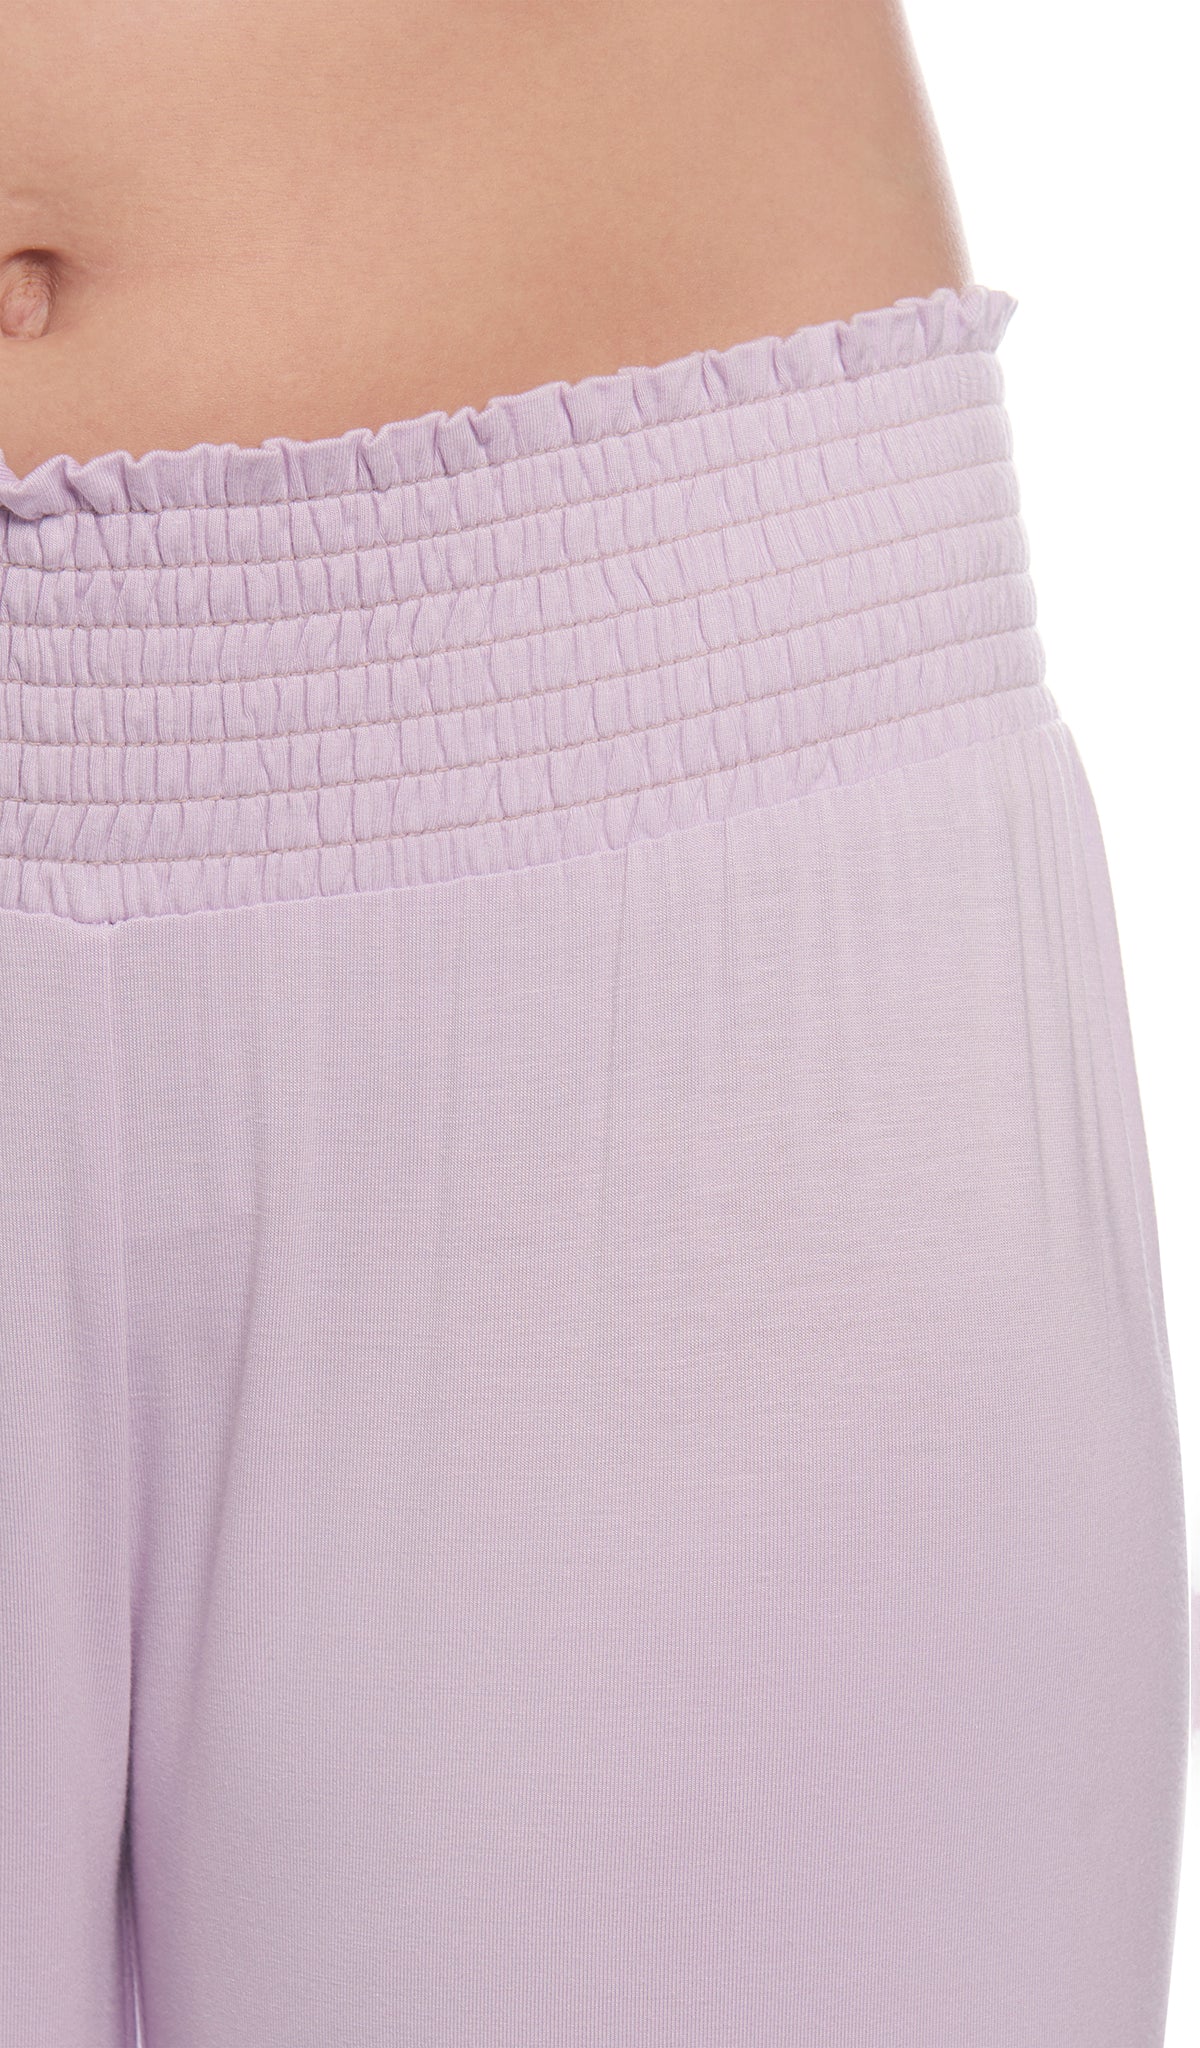 Lavender Analise 5-Piece Set, detailed shot of smocked elastic waistband.